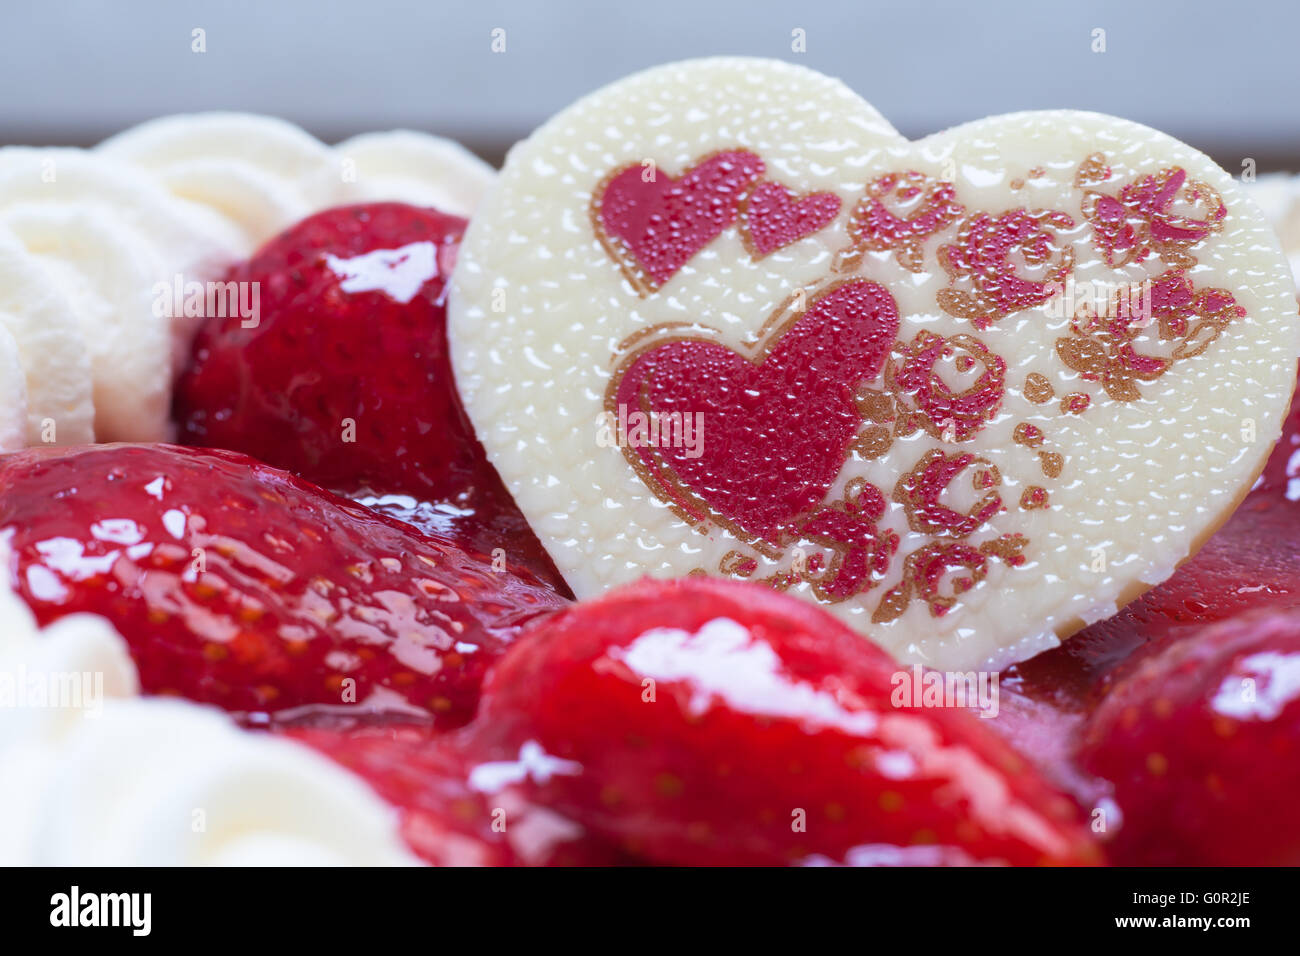 Vue rapprochée de gâteau aux fraises avec forme de coeur chocolats pour la Saint-Valentin Banque D'Images